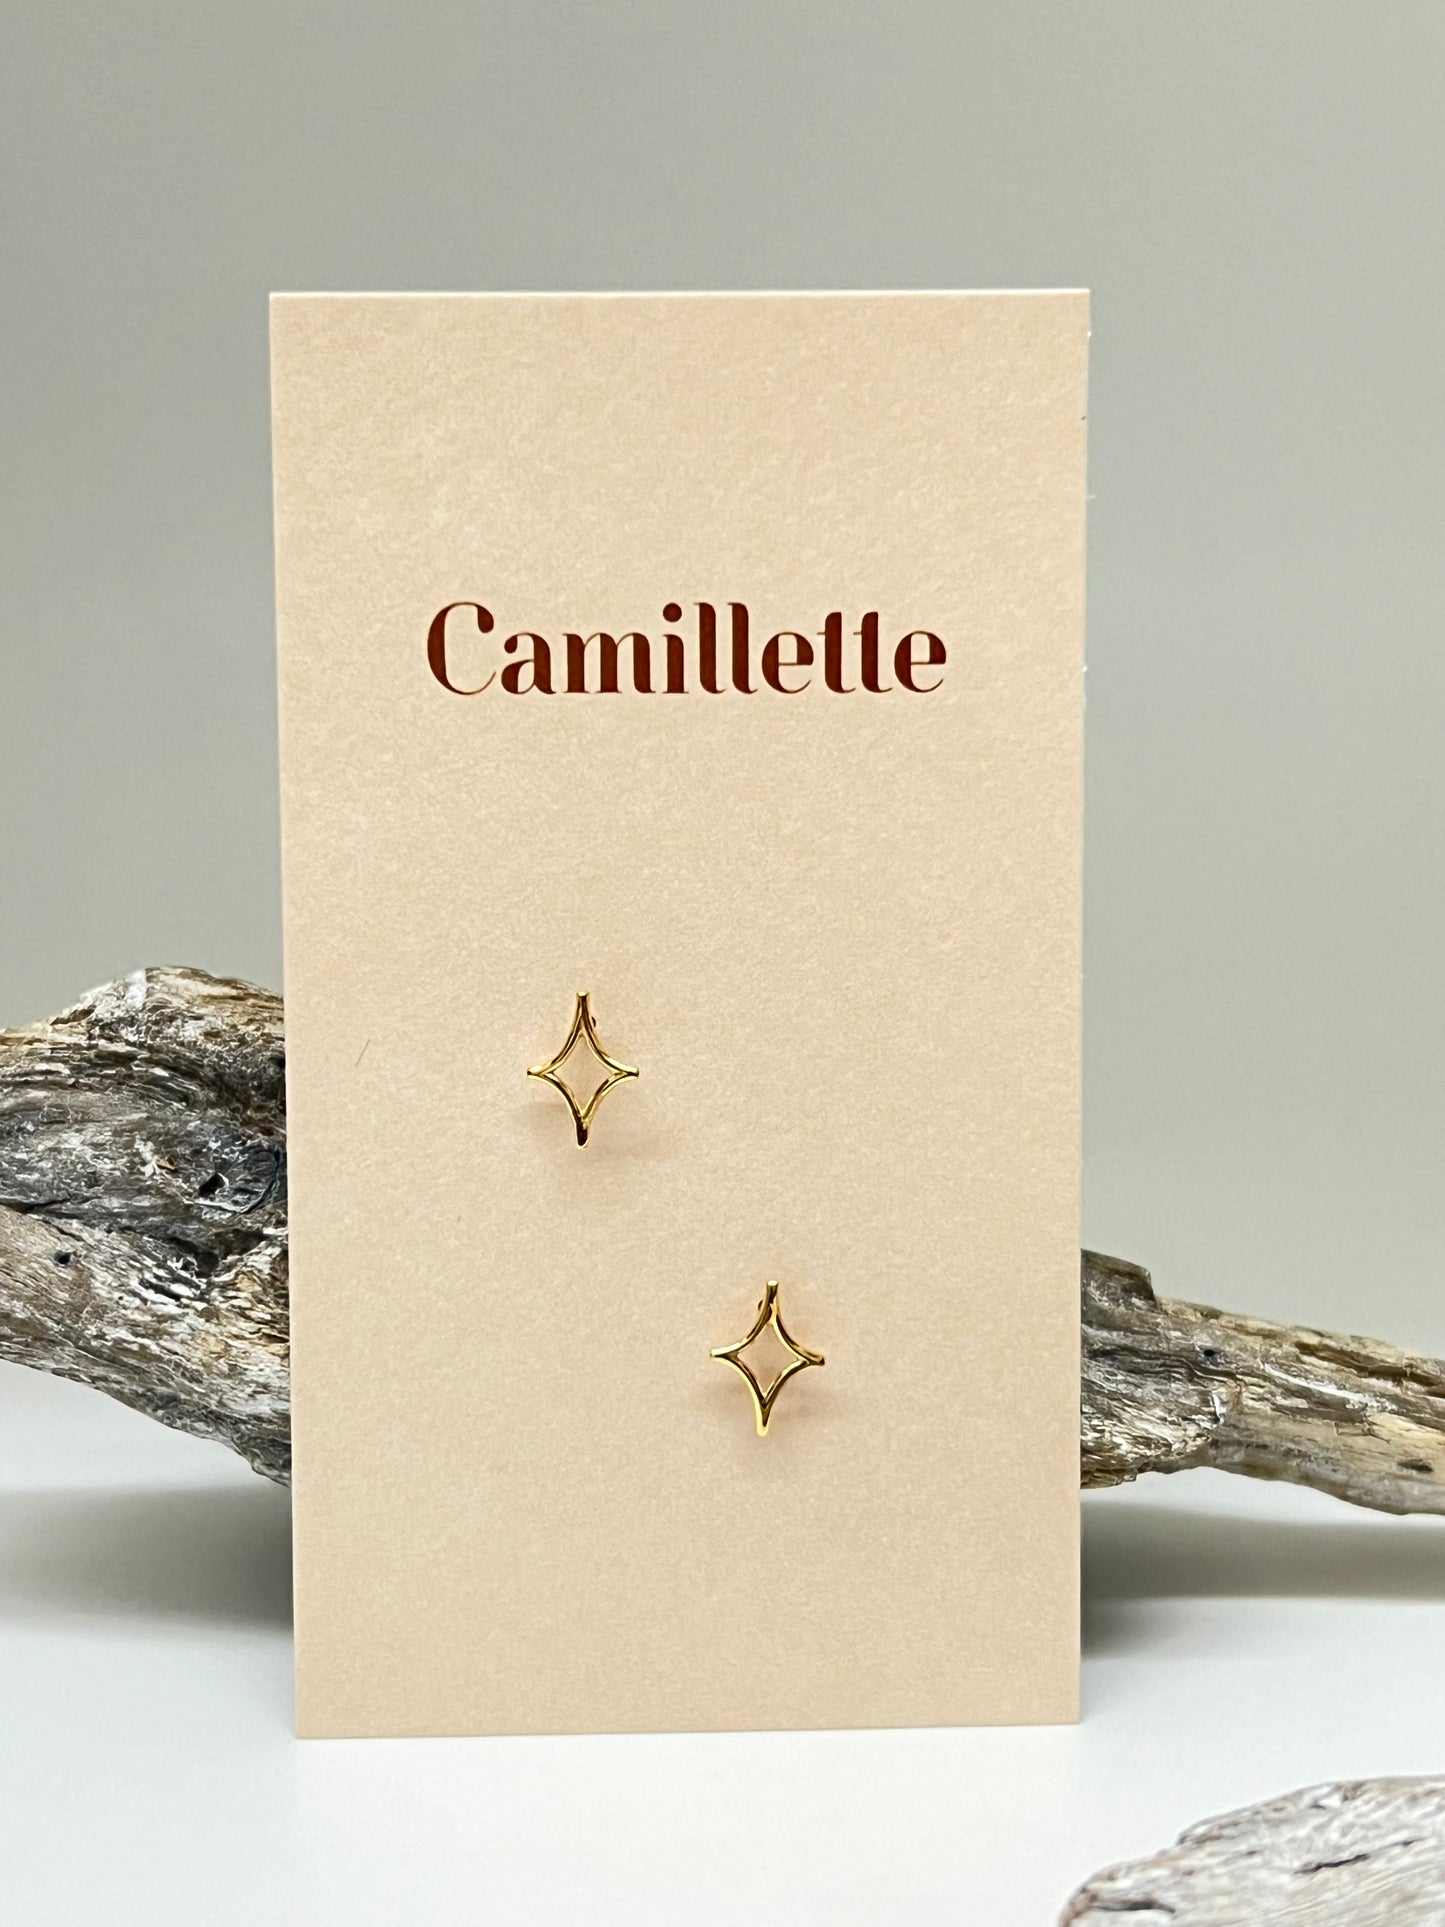 Boucles d'oreille Étoile en Argent 925 Fait main à Montréal Camillette Montréal star earring